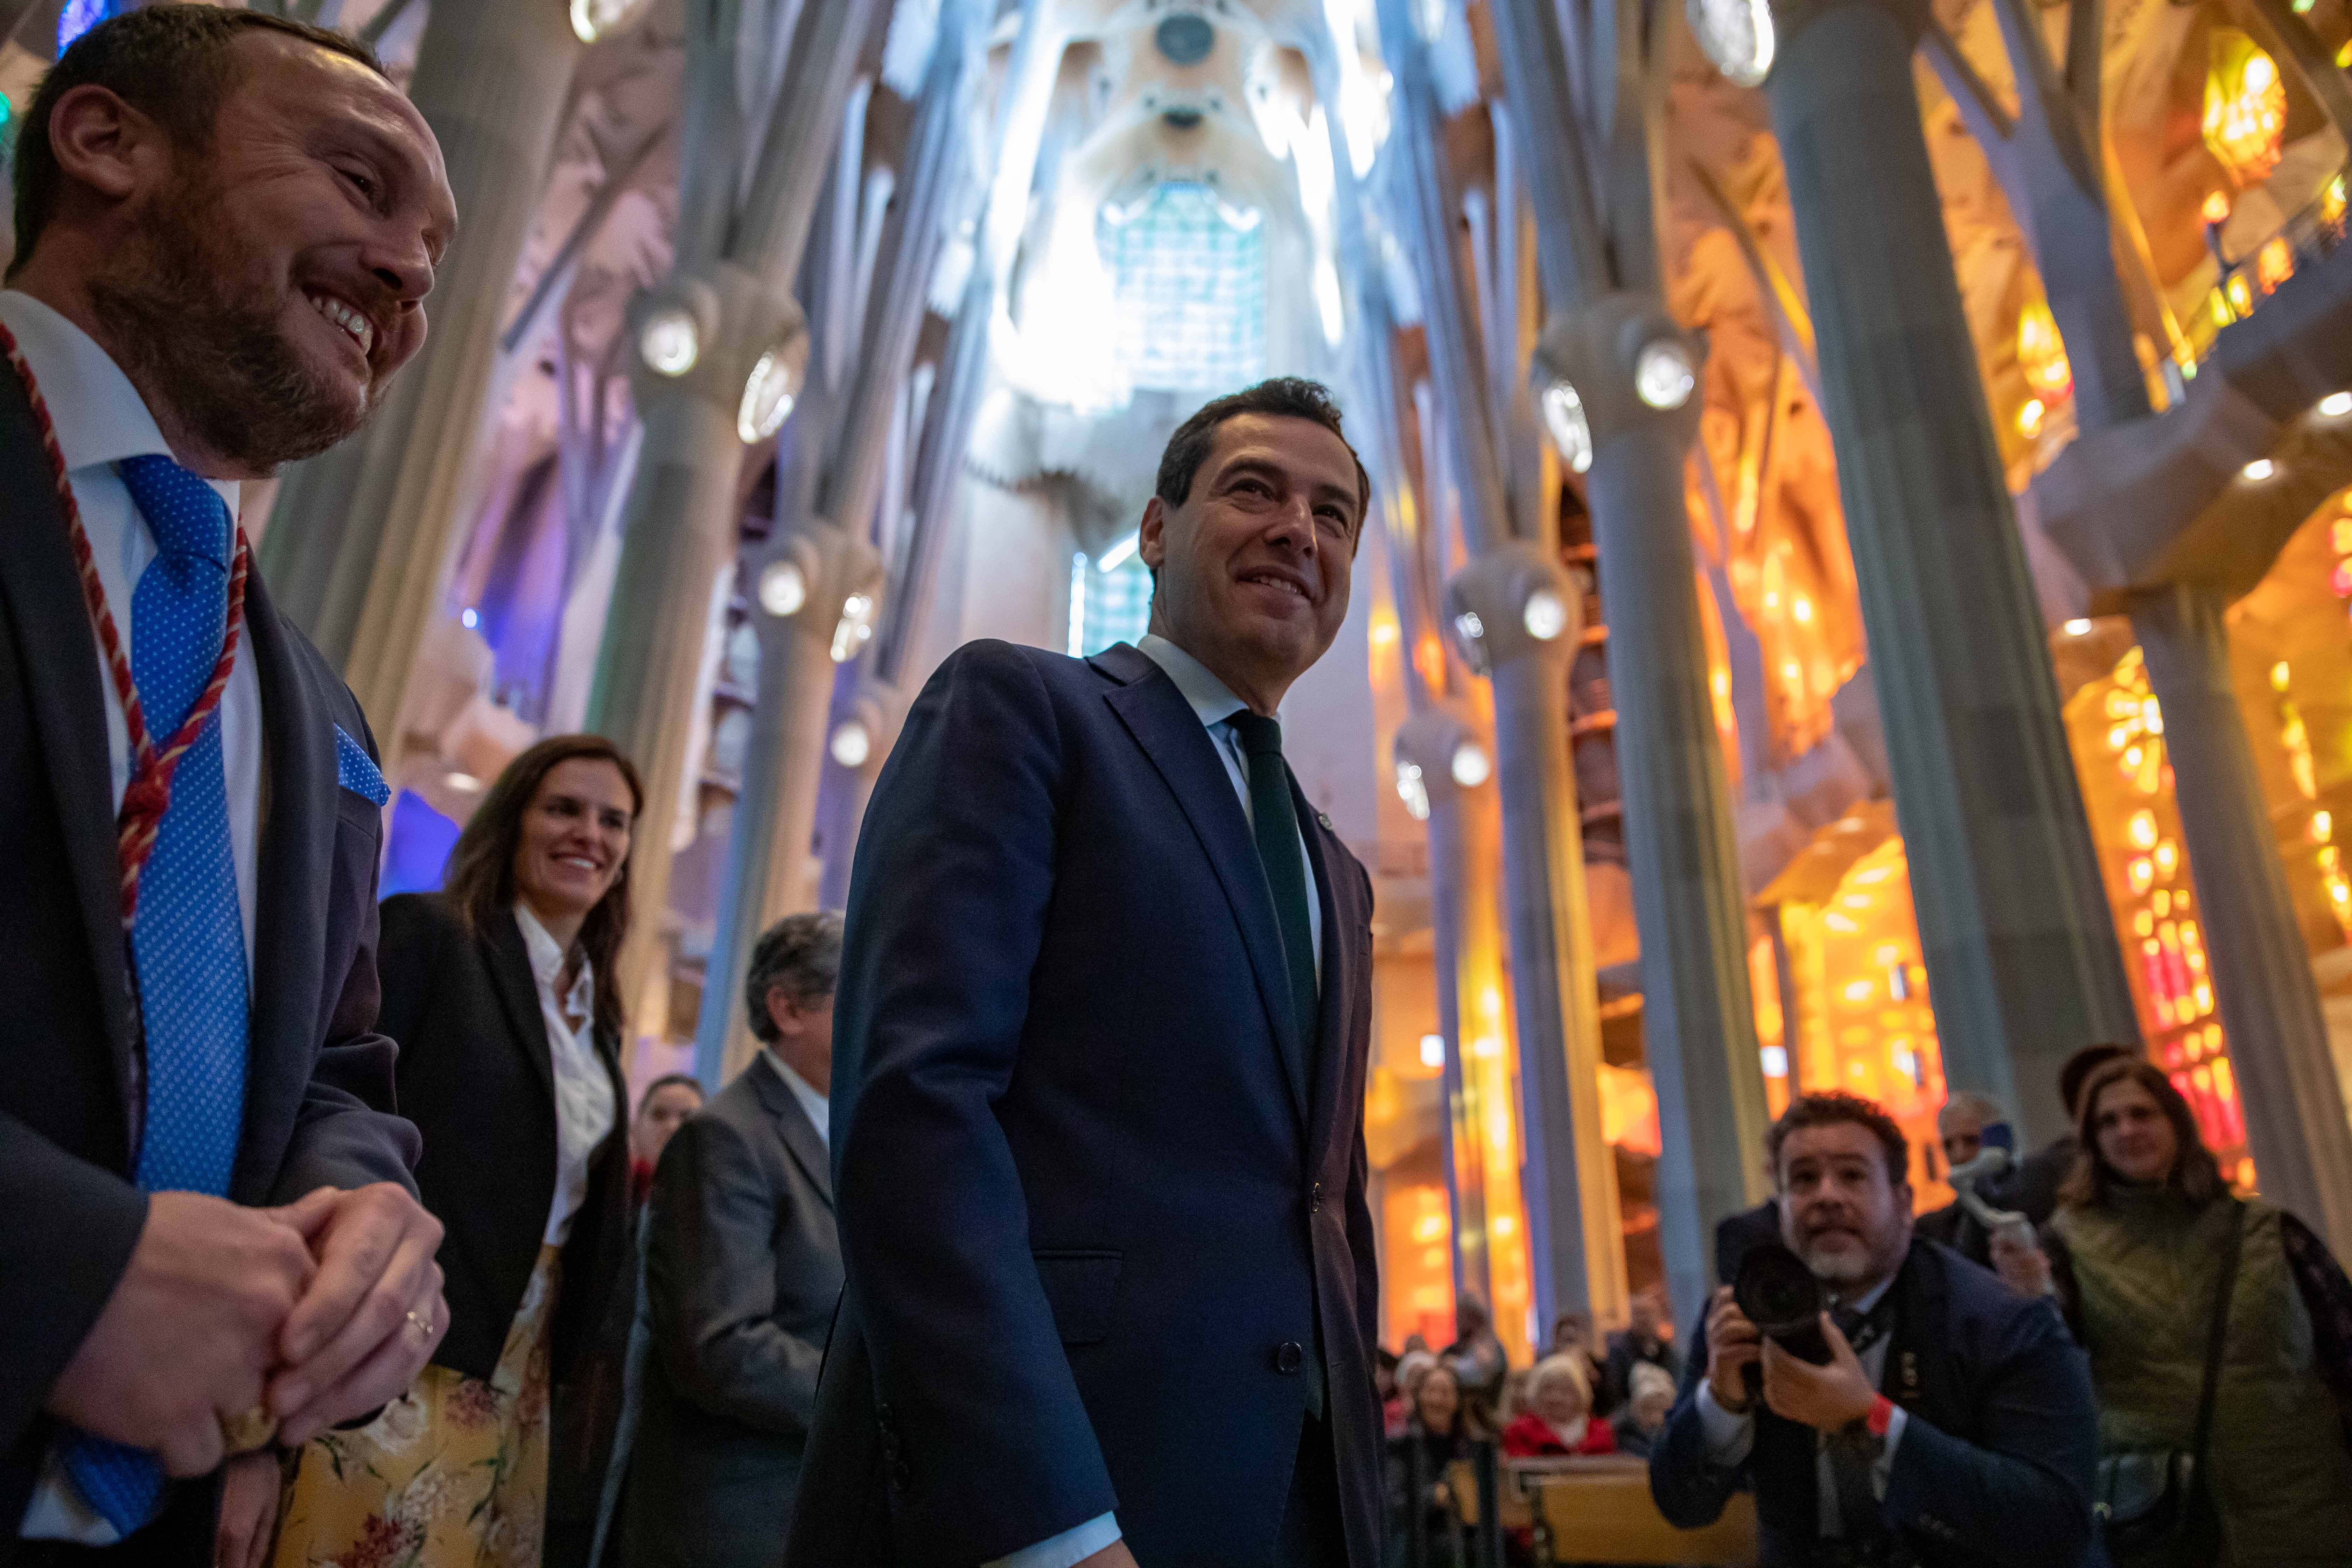 Juanma Moreno castiga al Govern por el gag sobre la Virgen del Rocío: "Tierra dirigida desde la intolerancia"